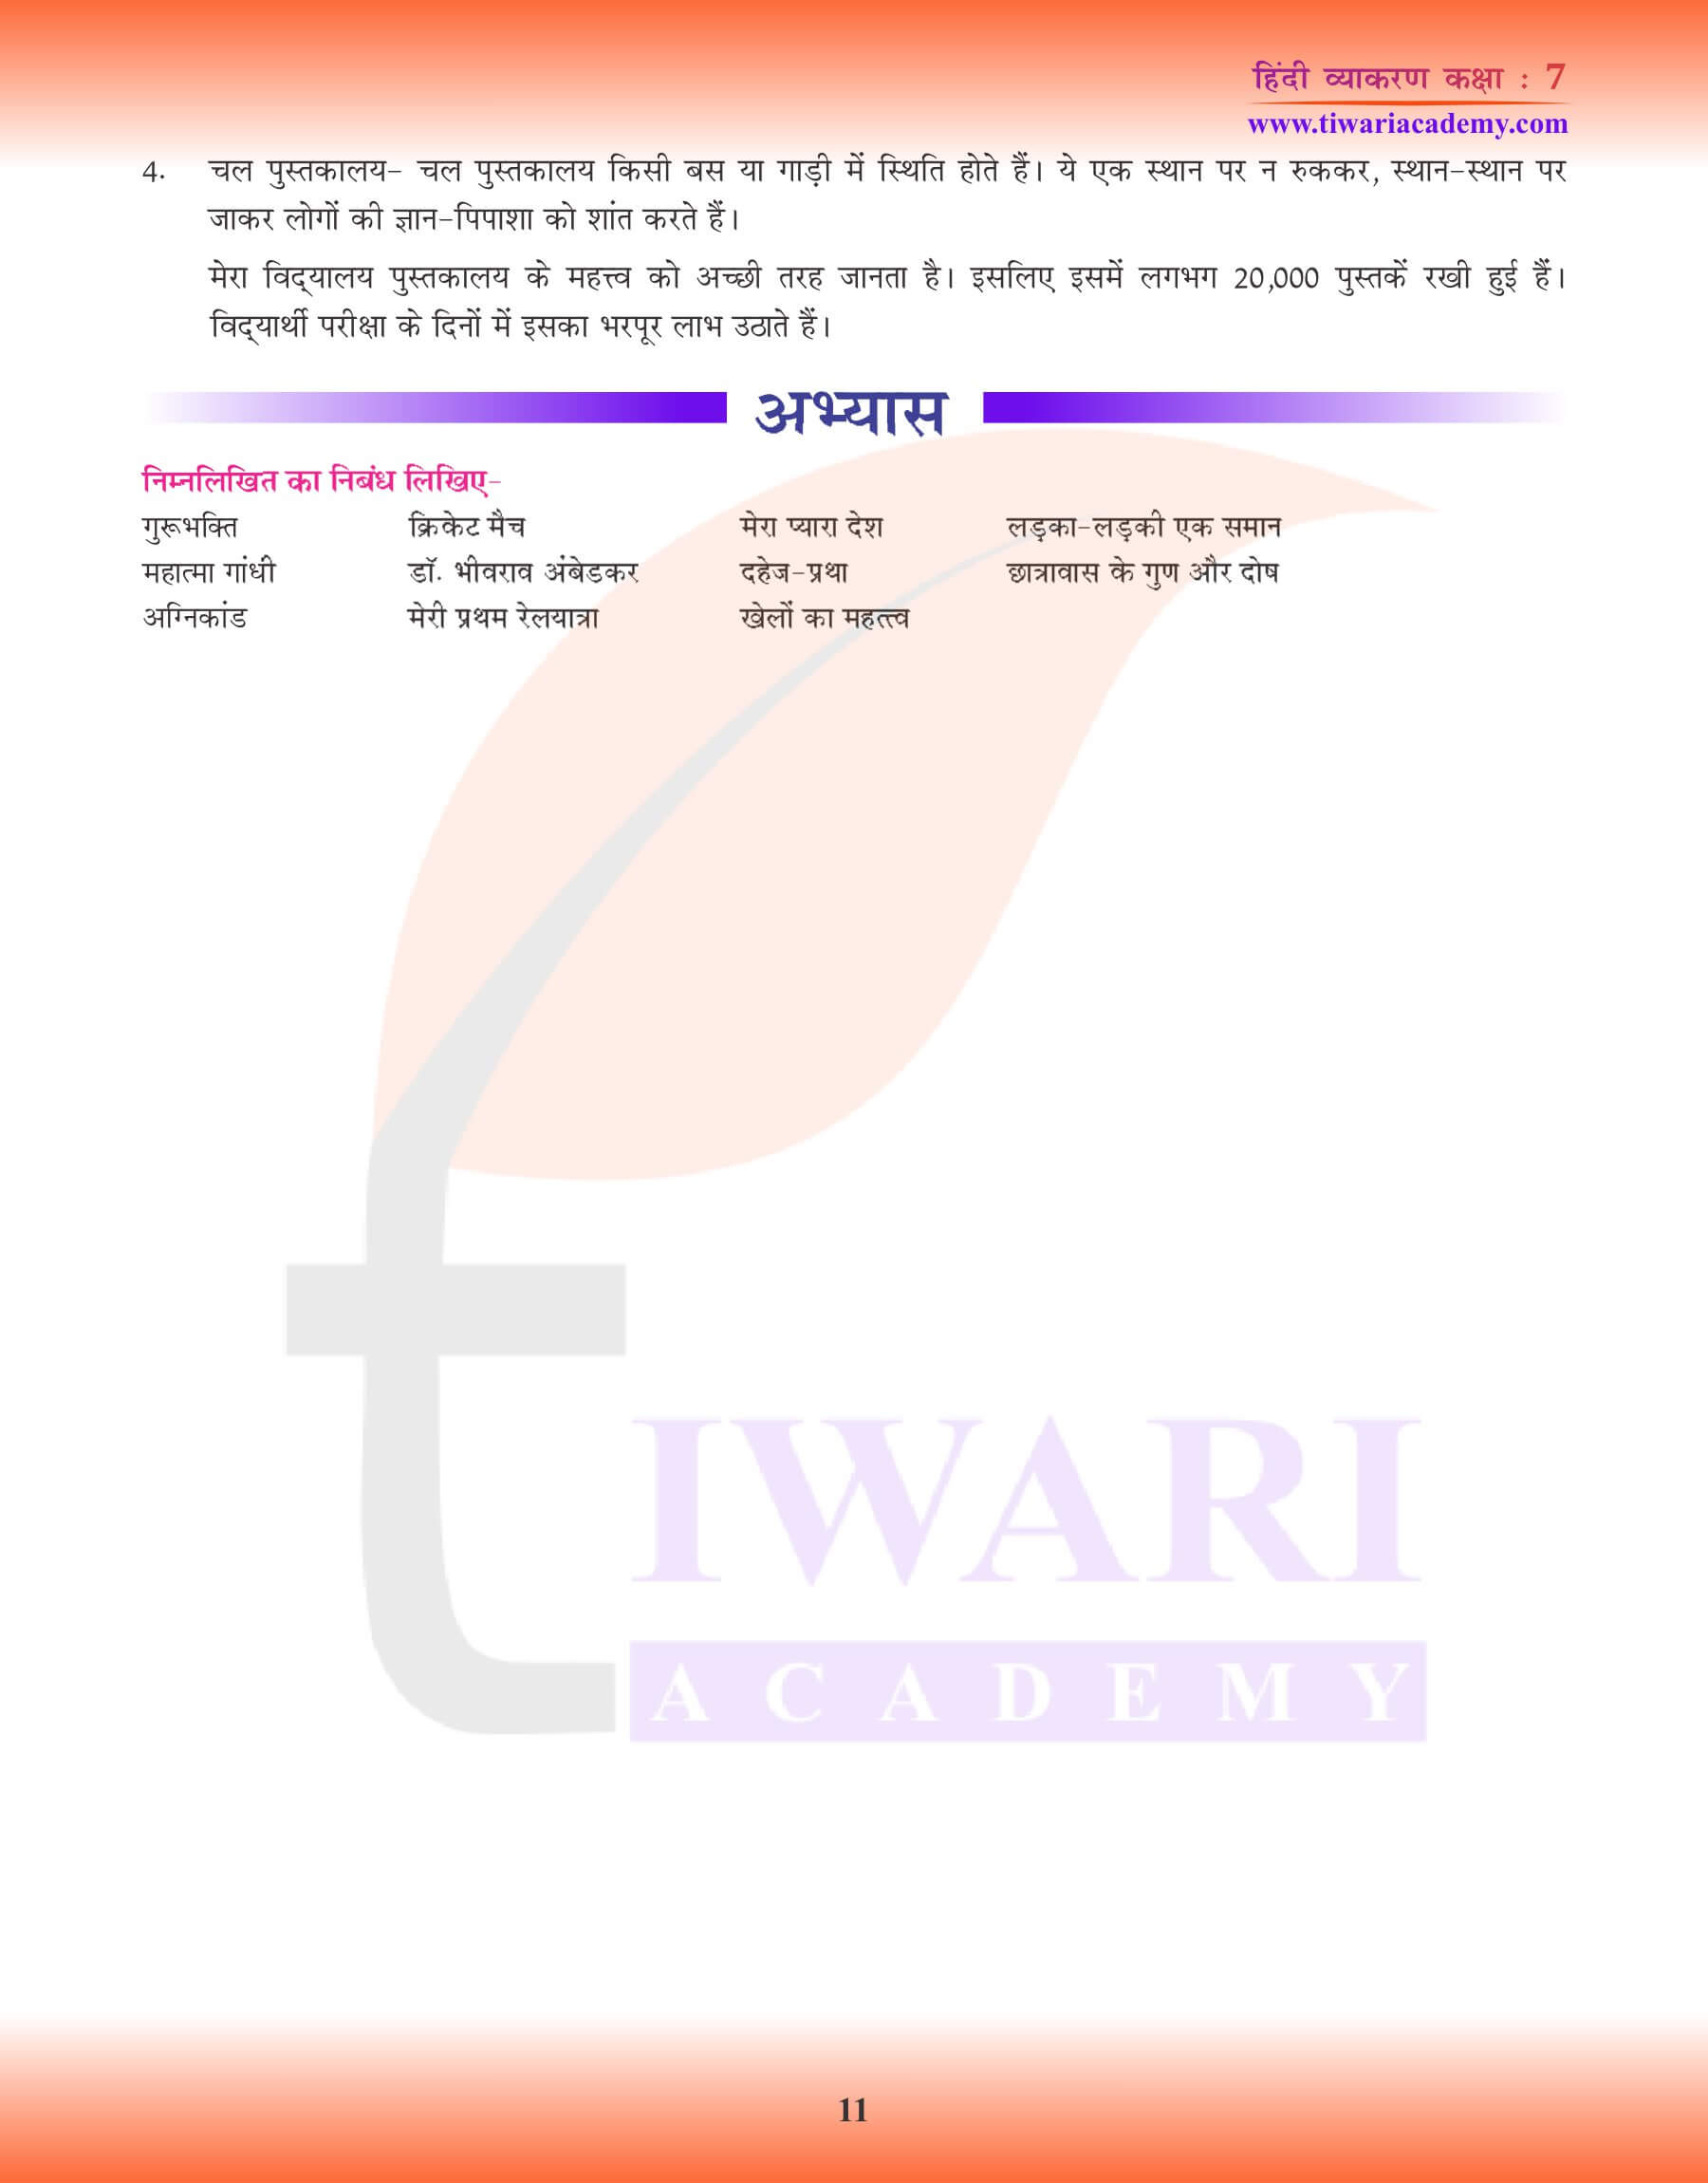 कक्षा 7 हिंदी व्याकरण में निबंध